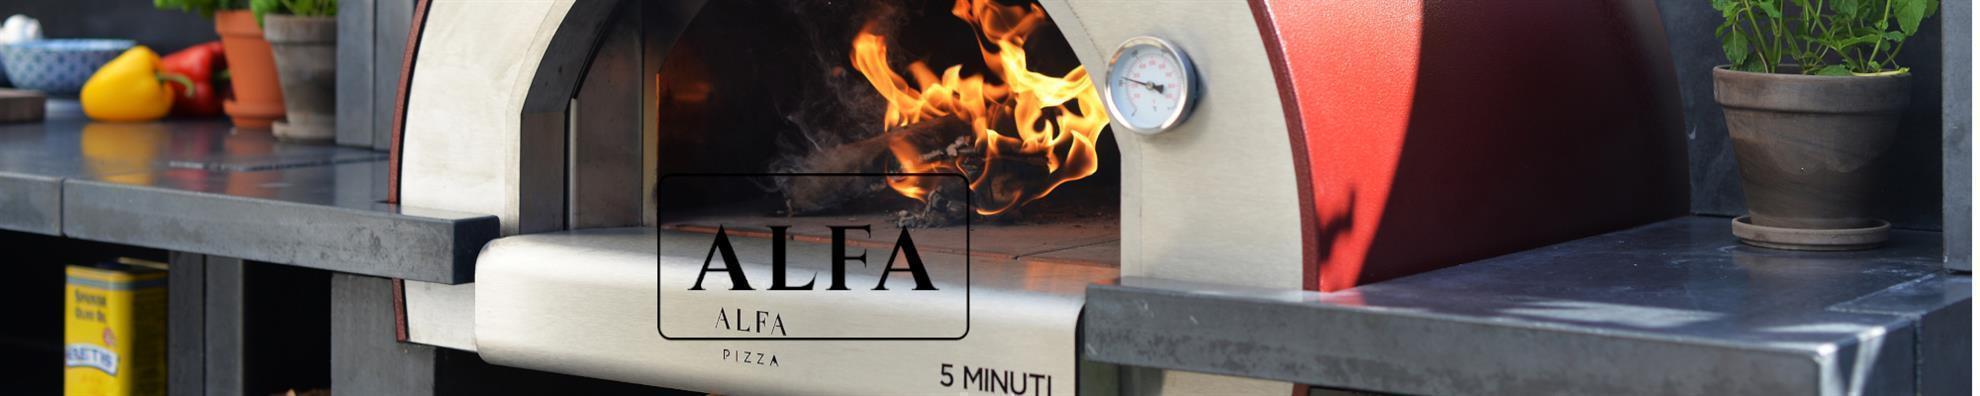 Alfa - Schutzhülle - 4 Pizza mit Unterwagen